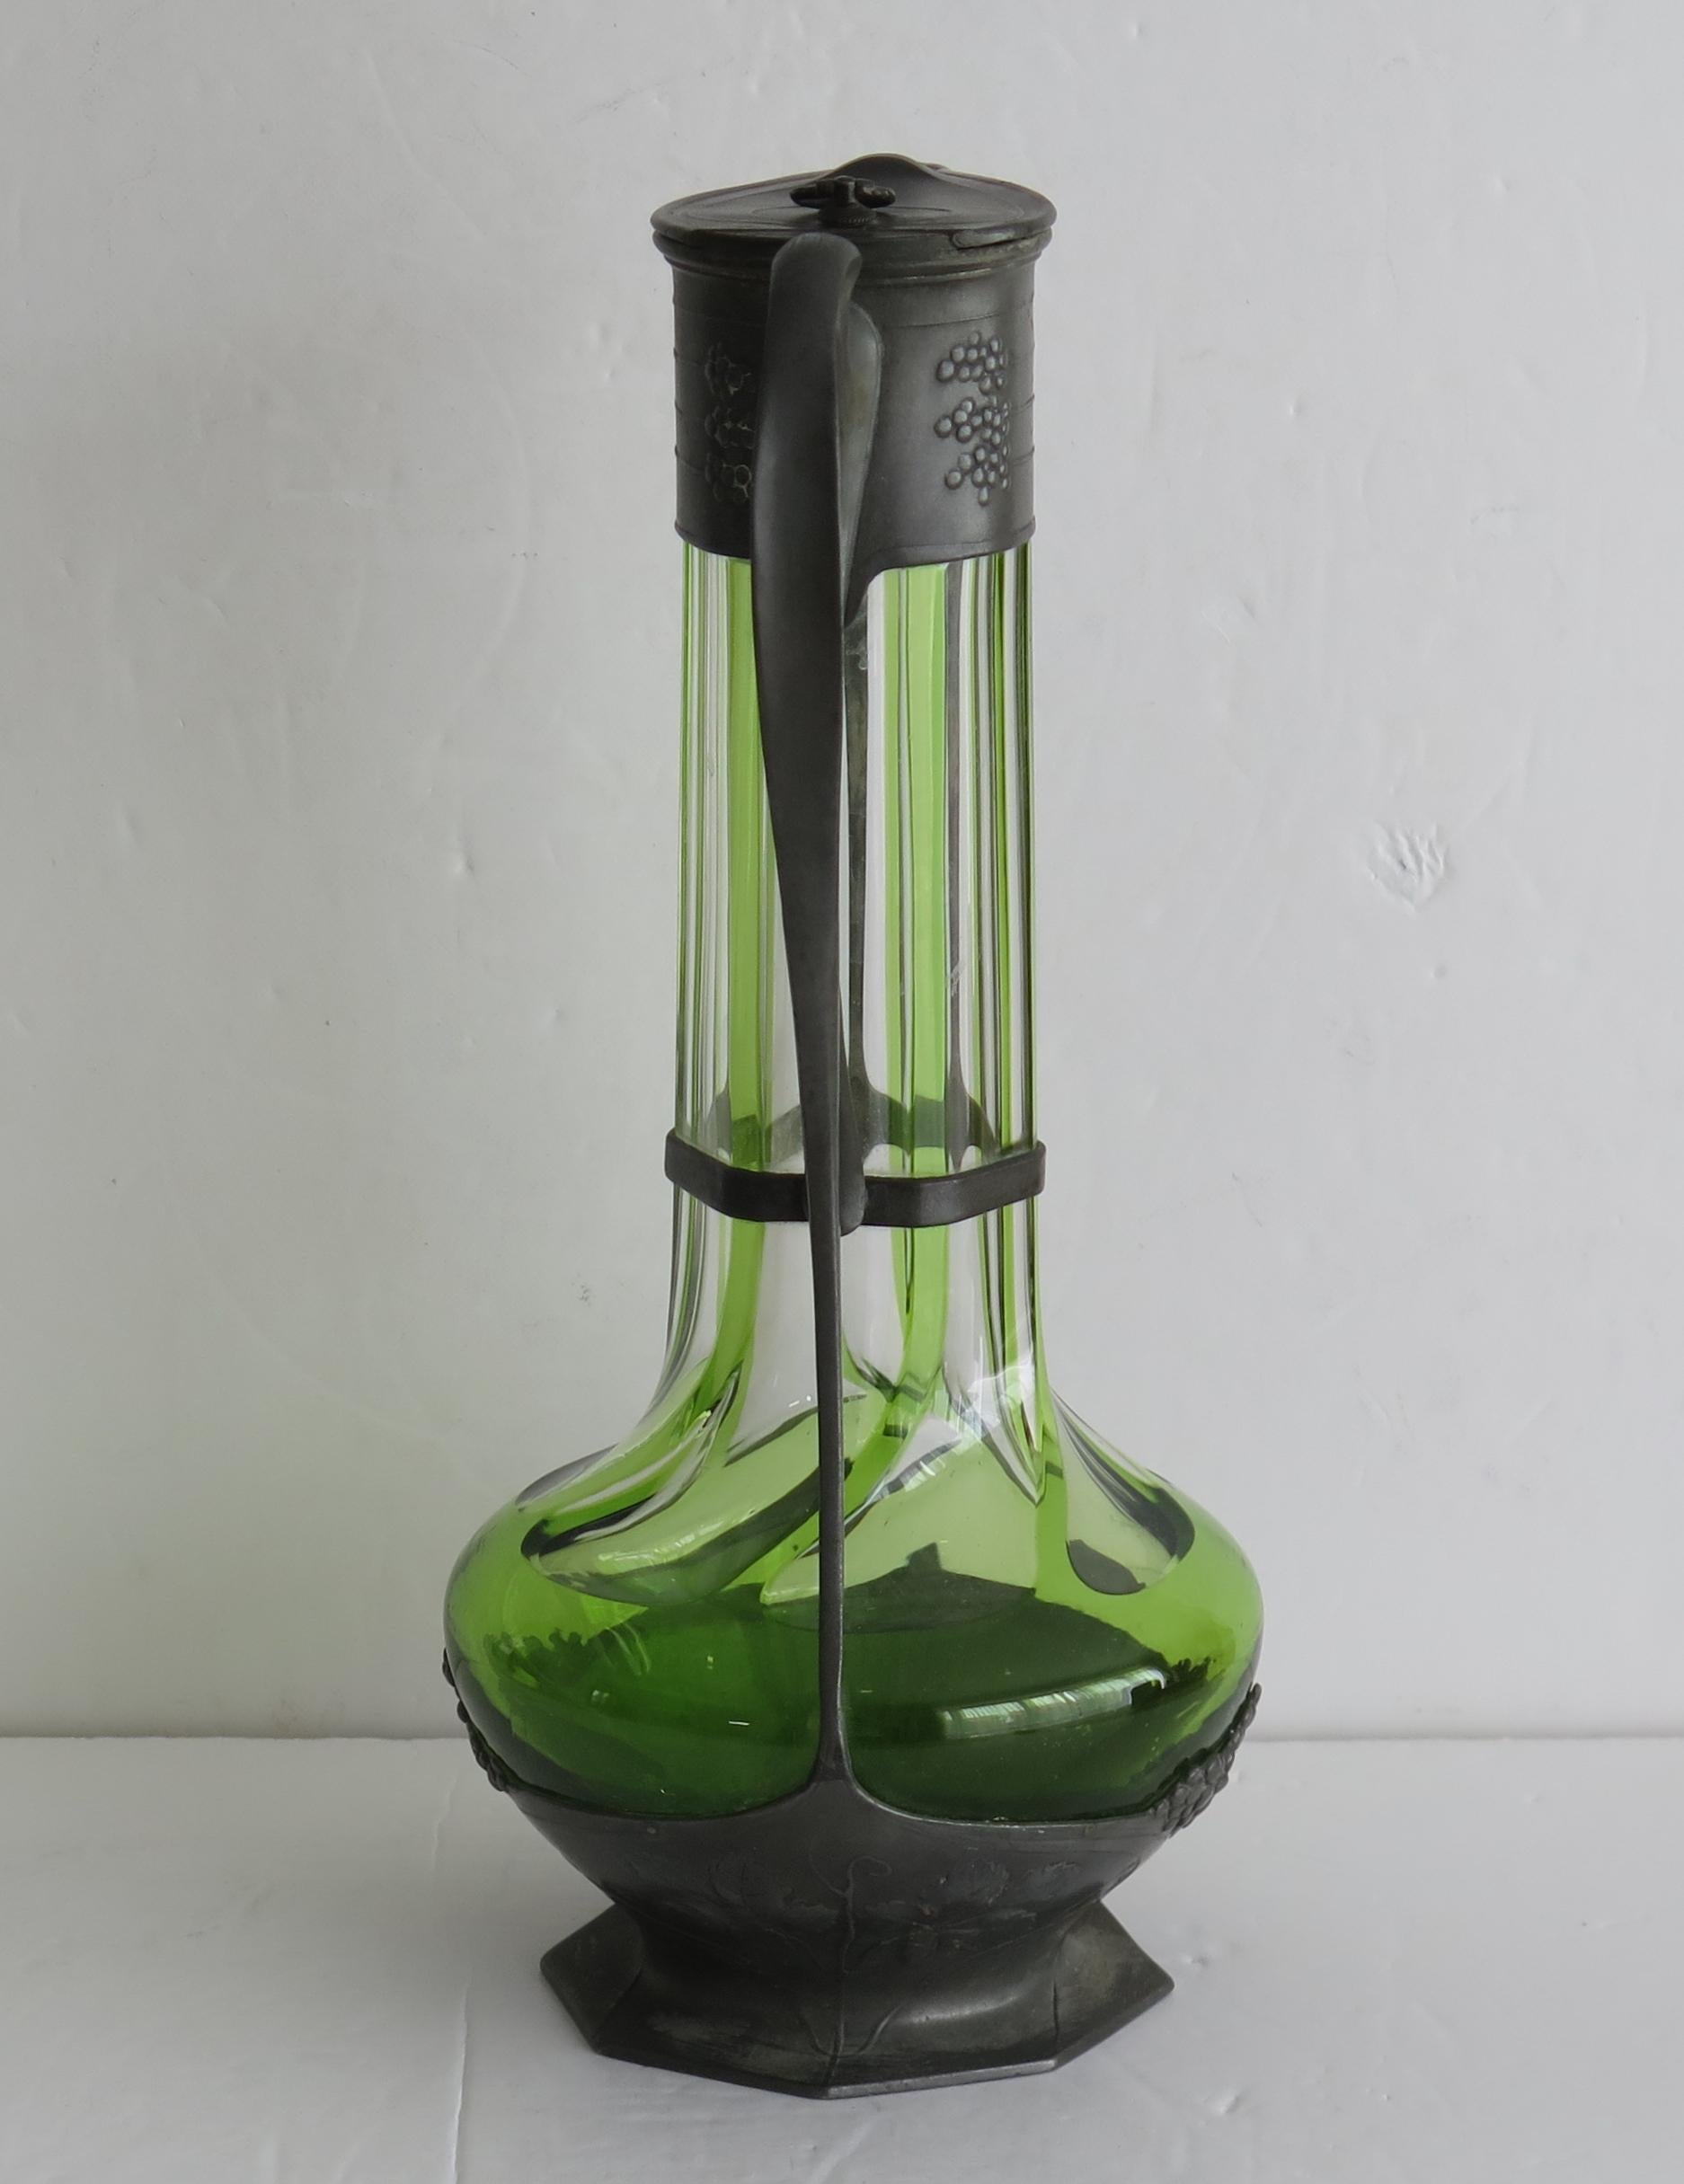 Dies ist eine gute vertikal gerippt grün und klar Glasflasche, in einer Zinnhülse, die alle in der Art Nouveau Stil der Zeit, von Orivit, Deutschland, um 1900.

Das Design und die Dekoration aus Zinn verkörpern die geschwungenen Linien des